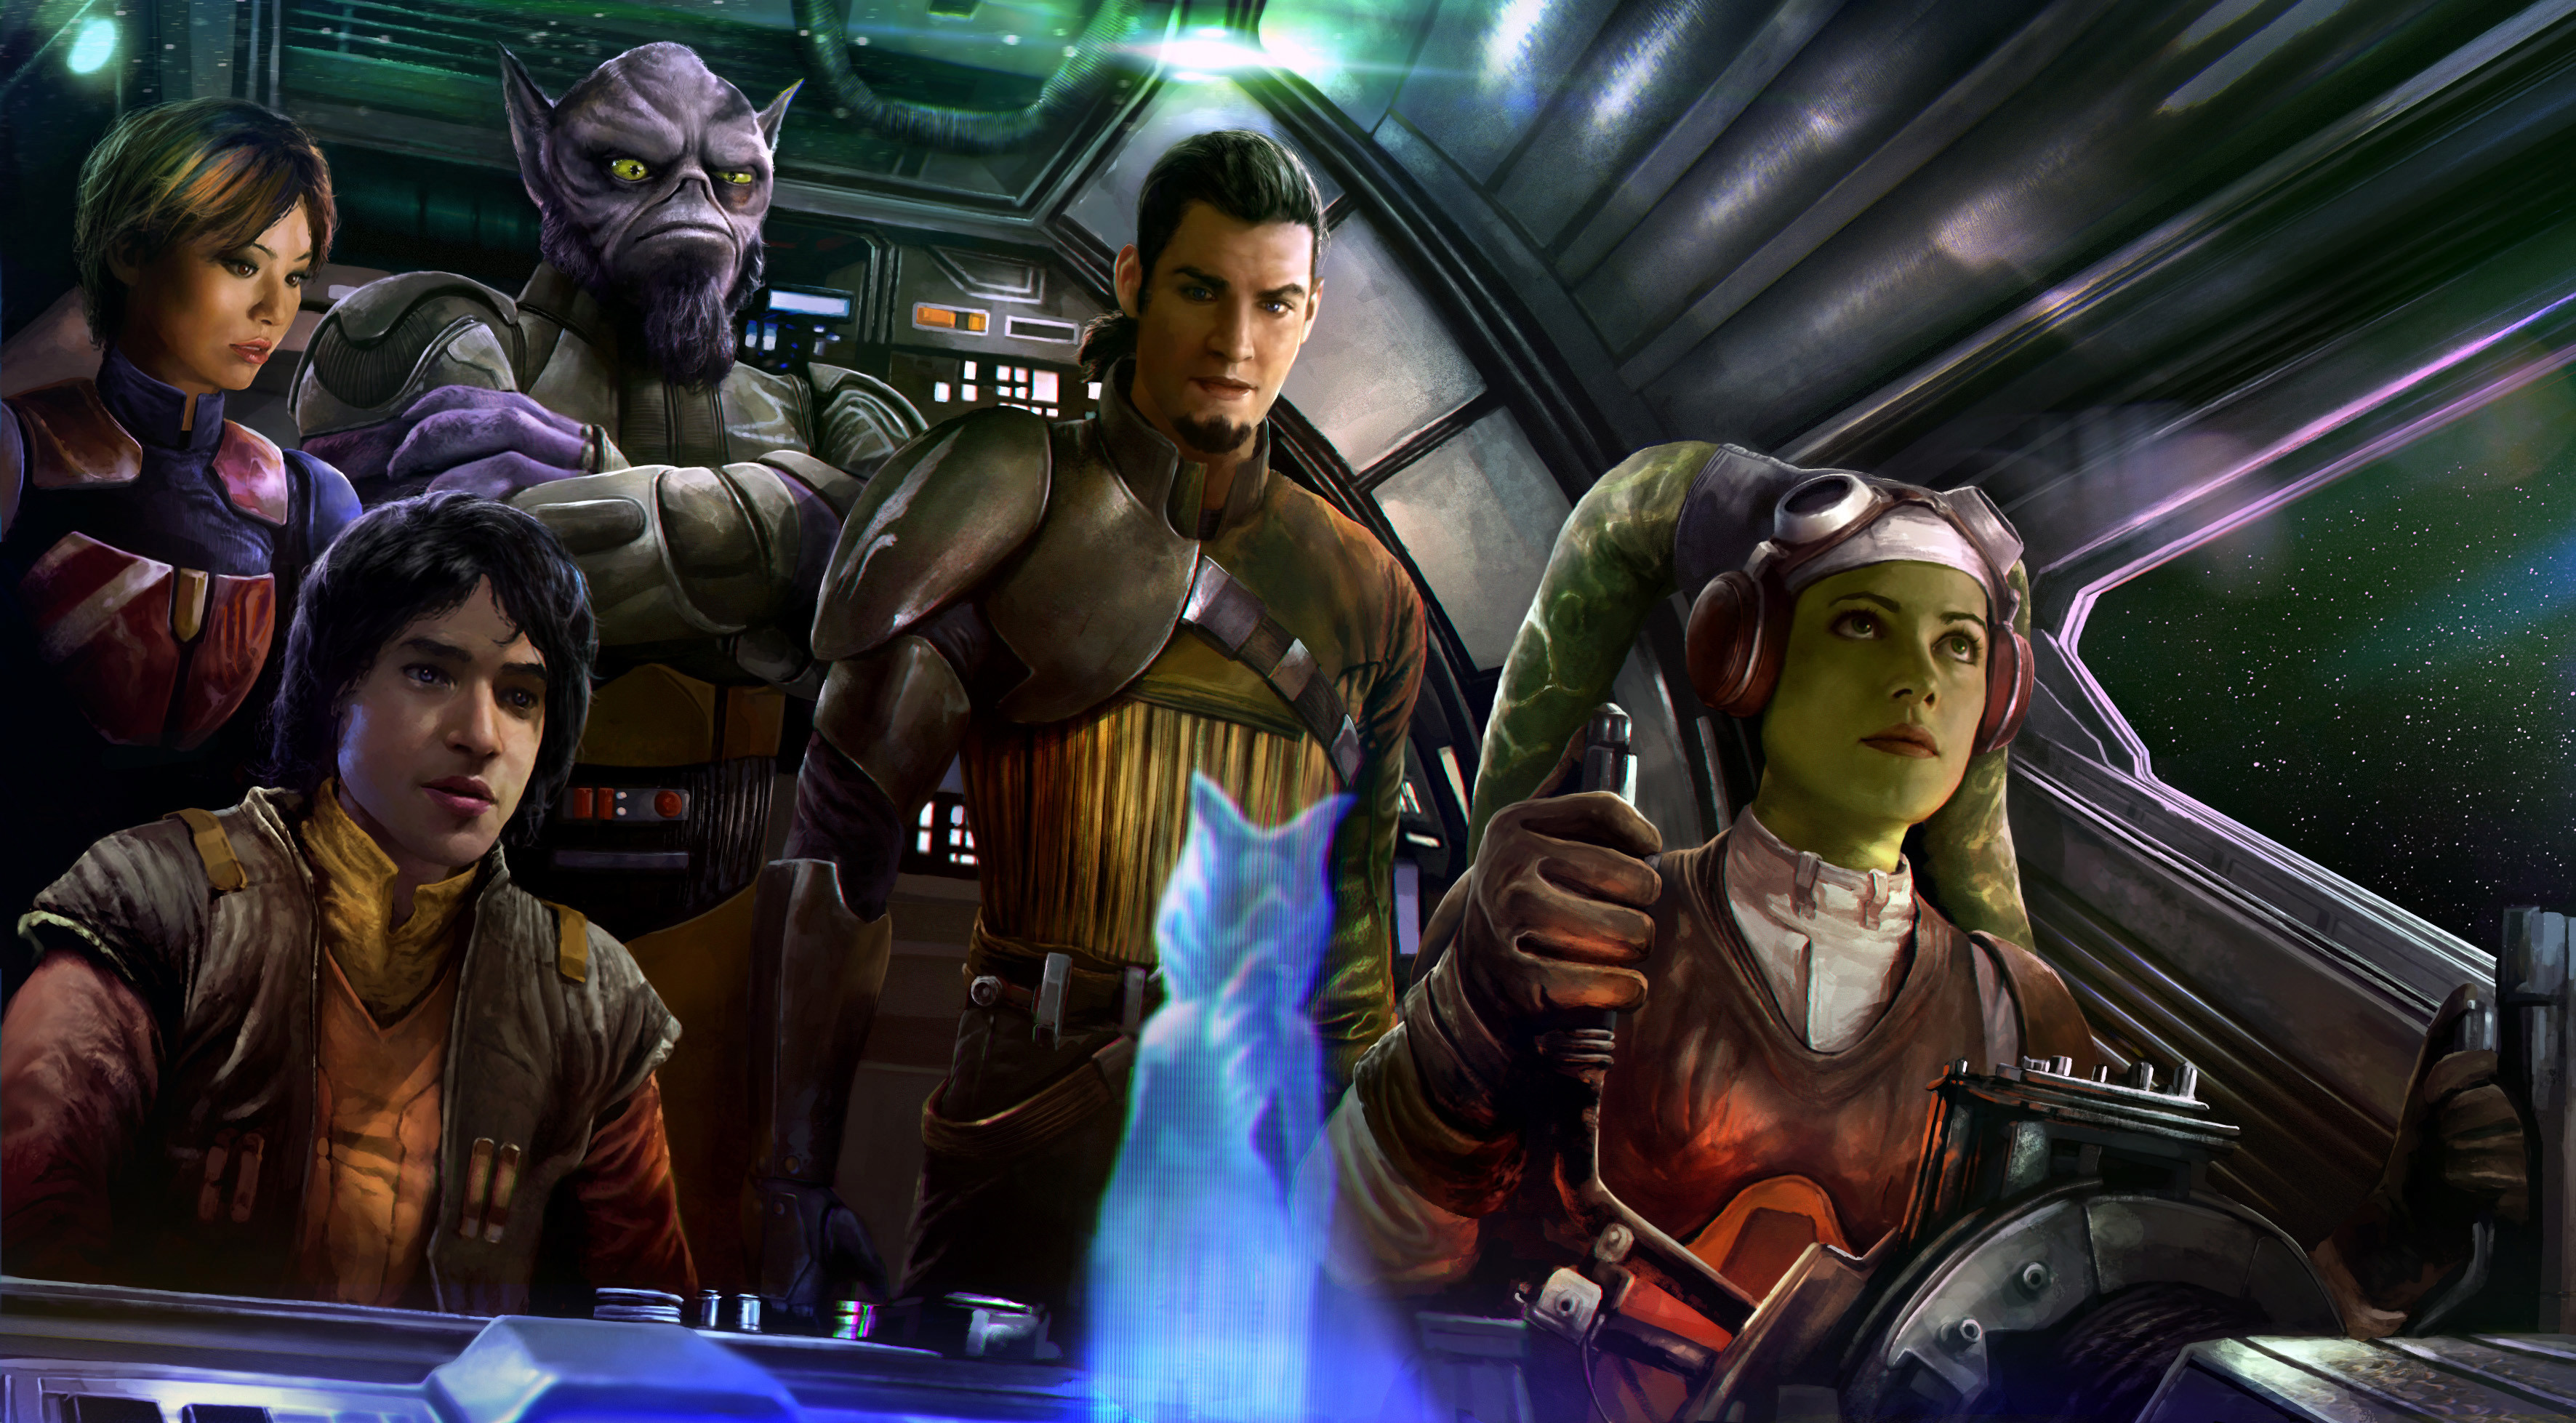 fondo de pantalla de star wars rebeldes,juego de acción y aventura,juego de pc,héroe,cg artwork,juegos